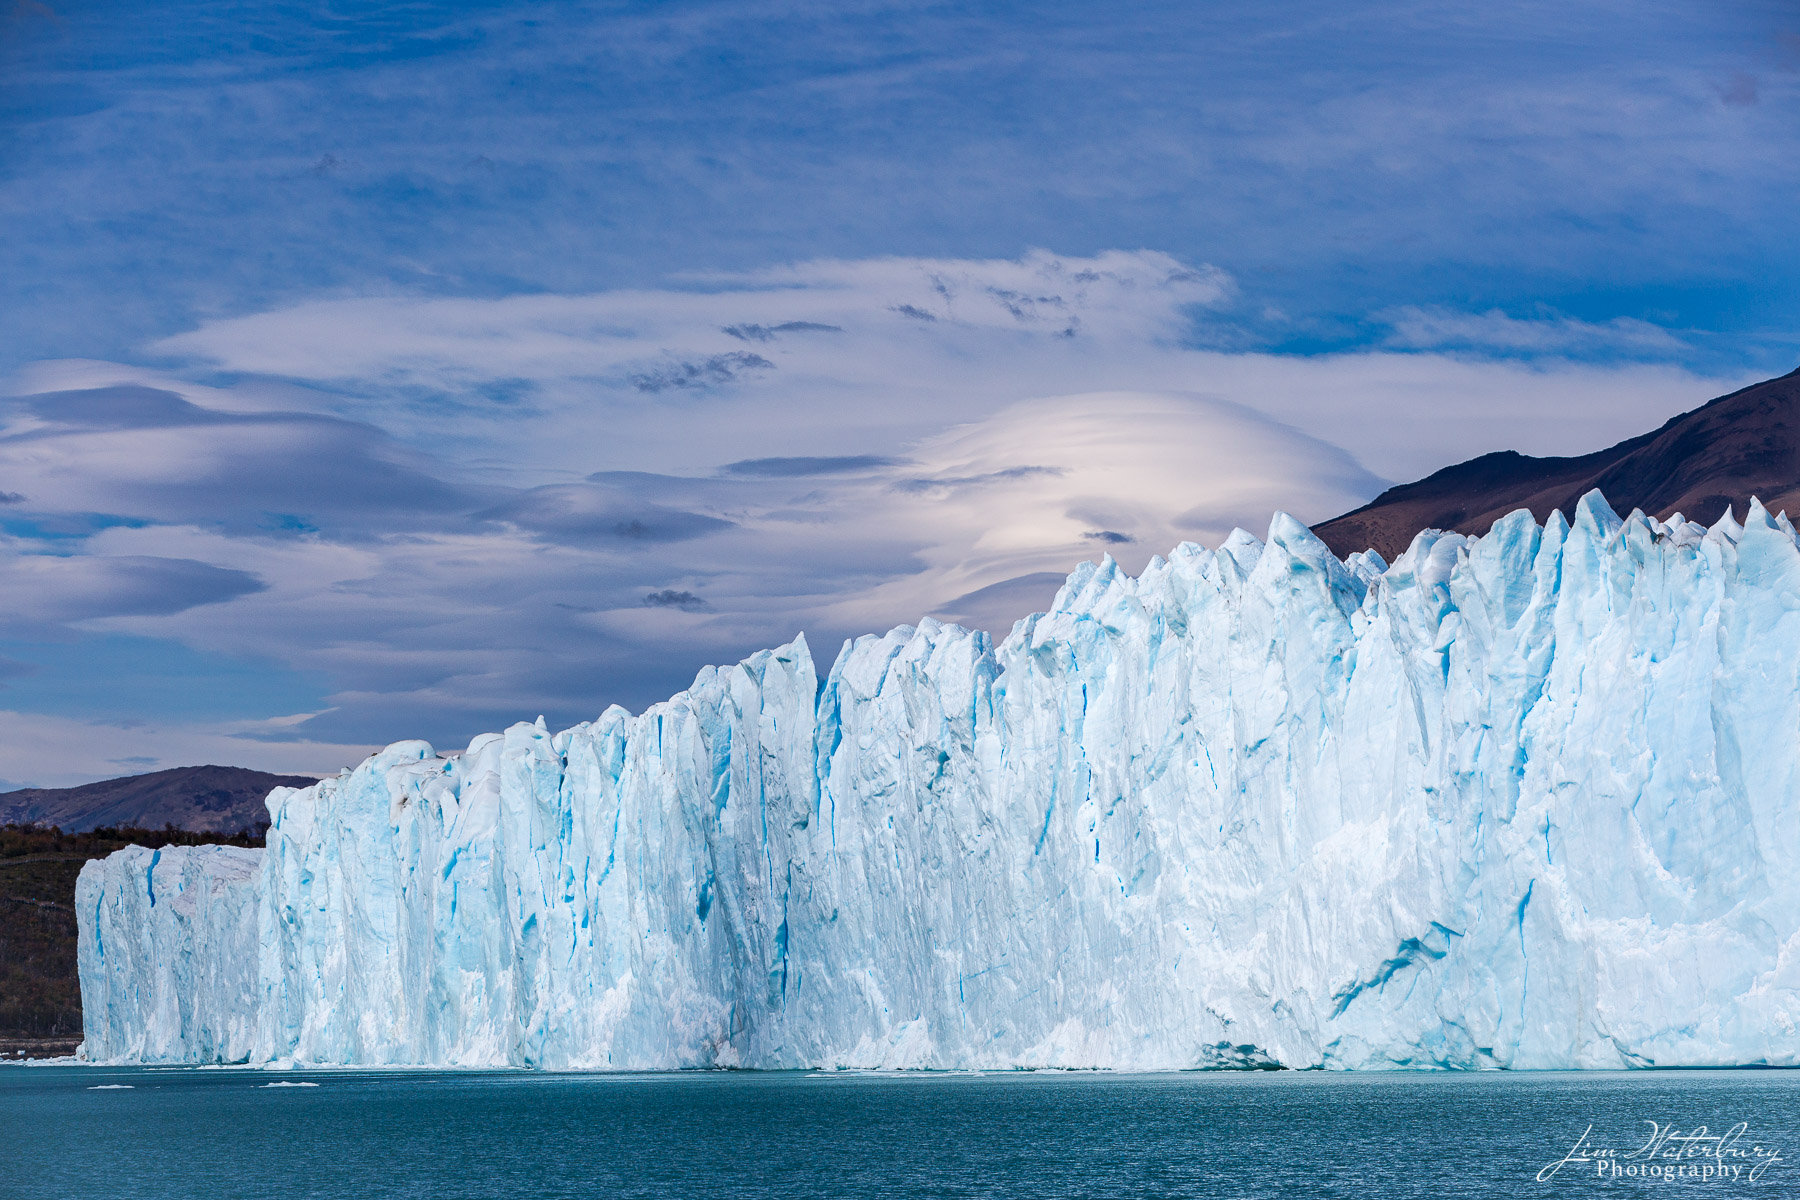 Wall of the Perito Moreno Glacier in Los Glaciares National Park in Argentina.